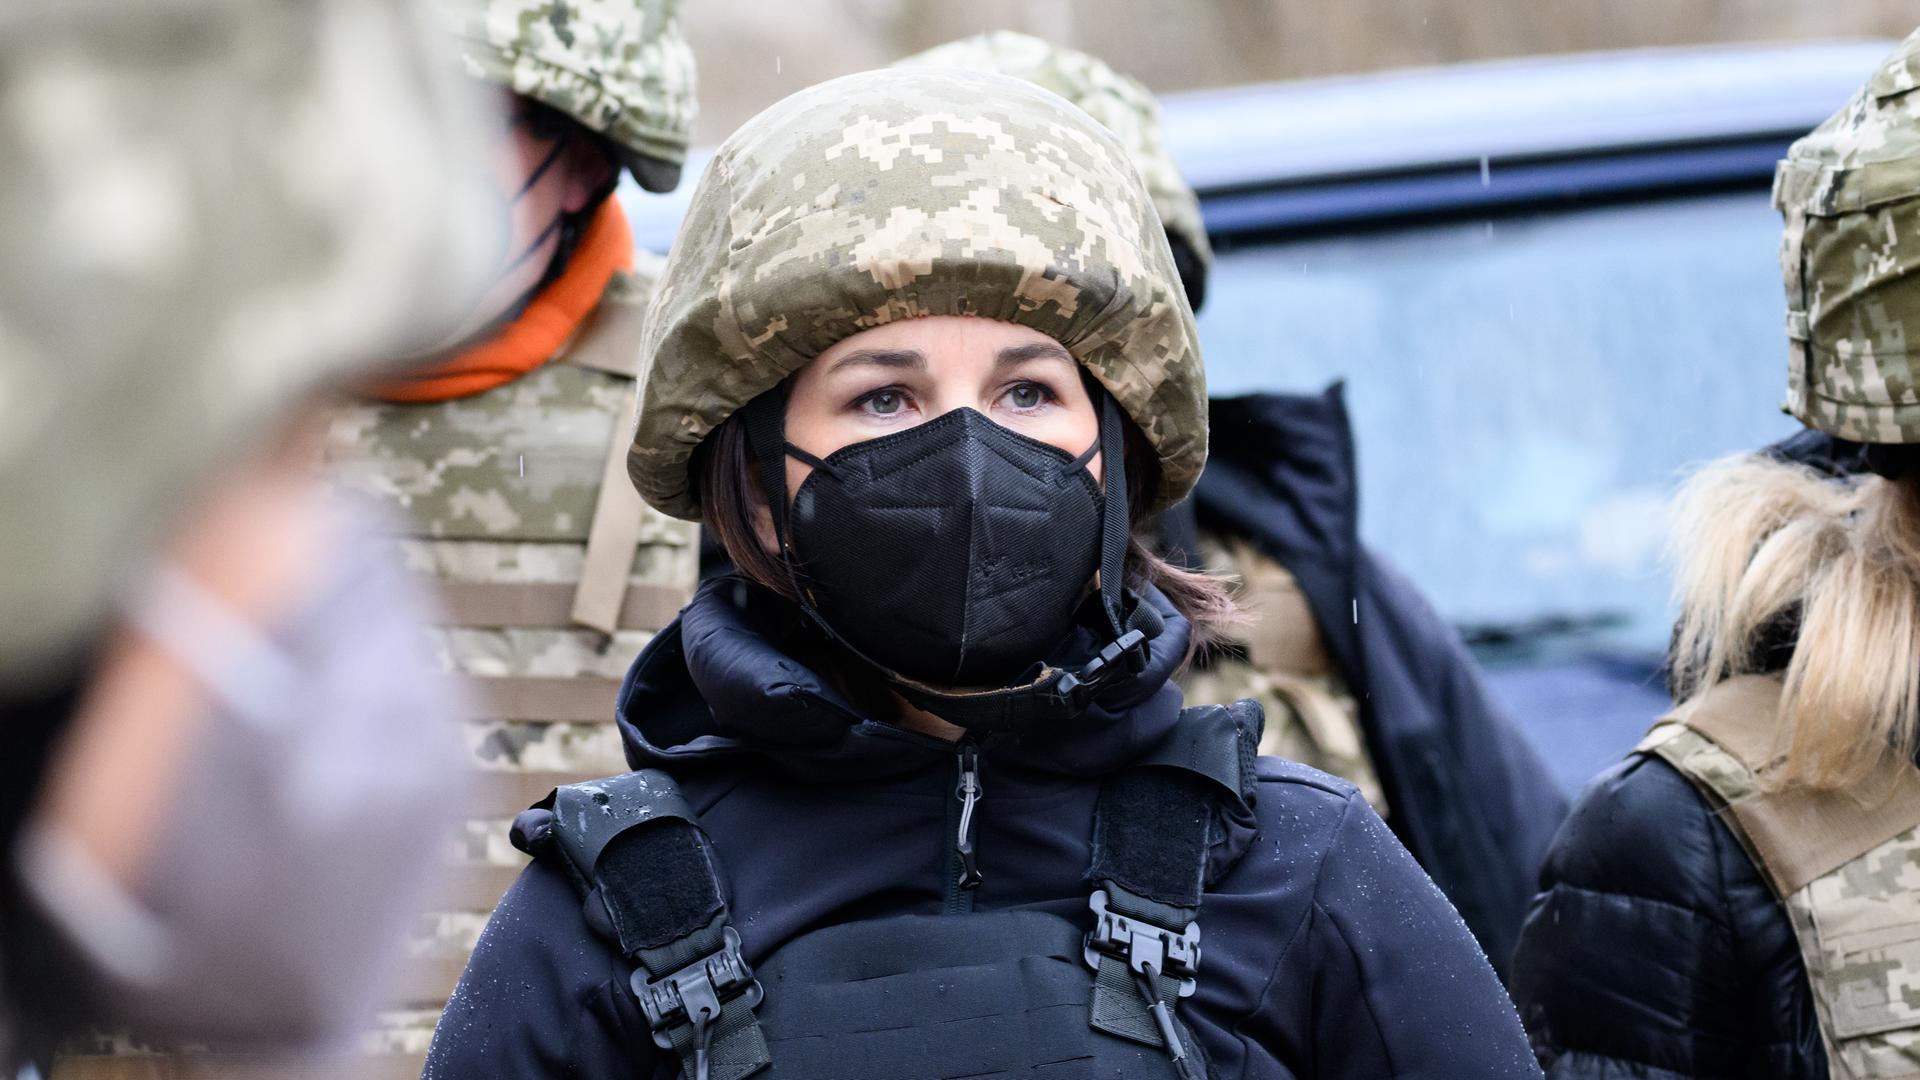 Außenministerin Annalena Baerbock im Konfliktgebiet Donbass in der Ukraine. Sie trägt eine schwarze FFP2-Maske, einen Tarnhelm und eine schwarze Schutzweste. Sie ist umringt von Menschen, die ebenfalls Tarn- und Schutzkleidung tragen.